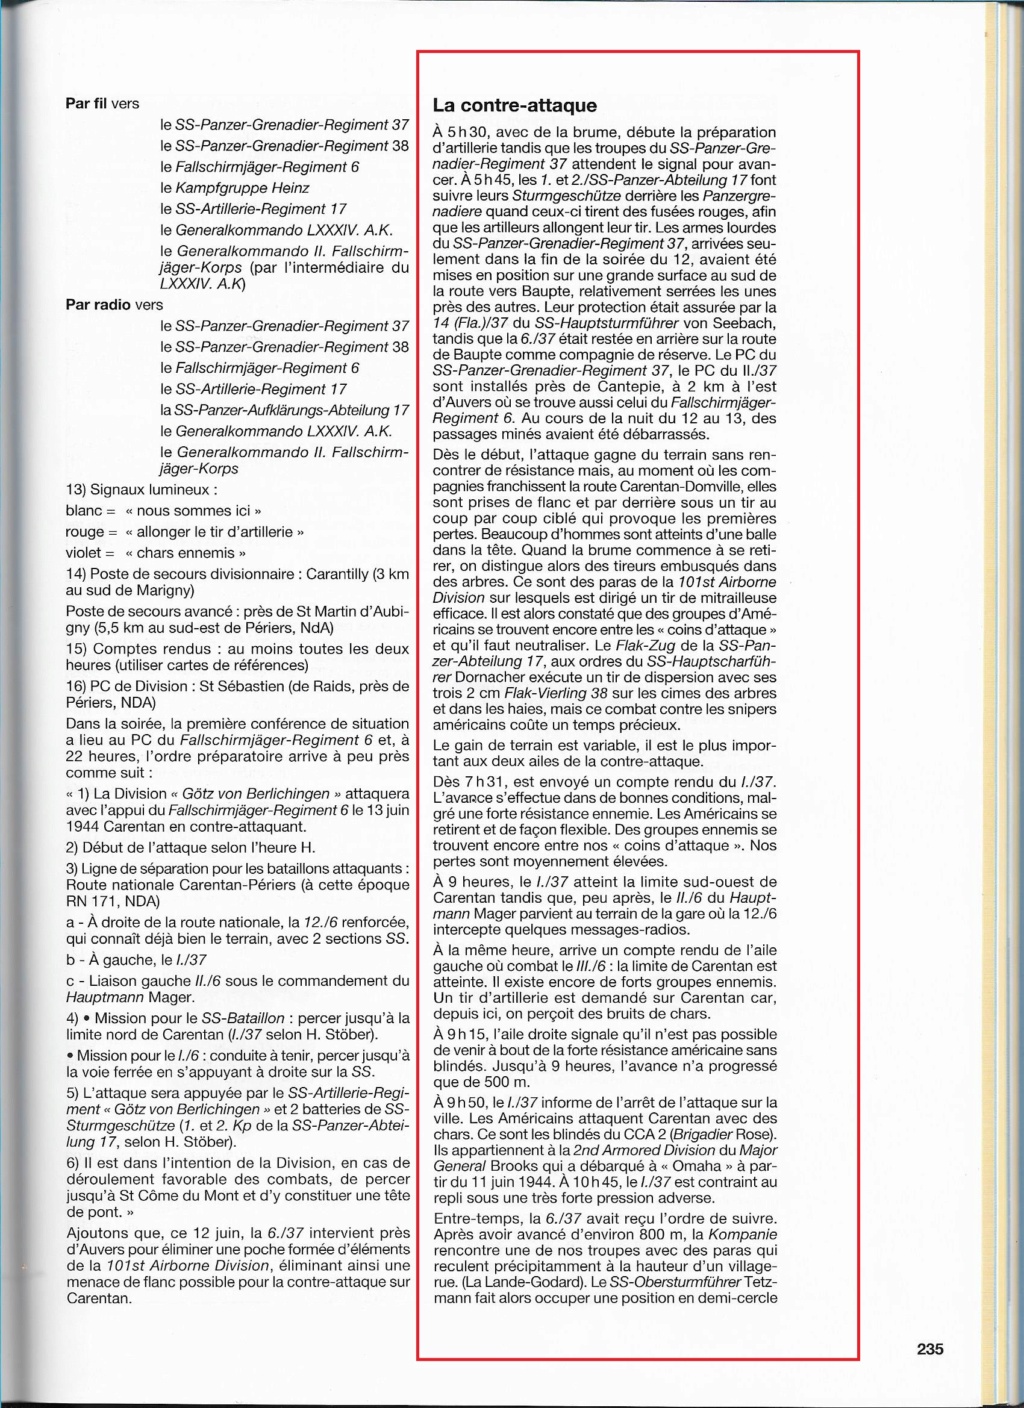 Documents Götz von Berlichingen Normandie  Xaver_21